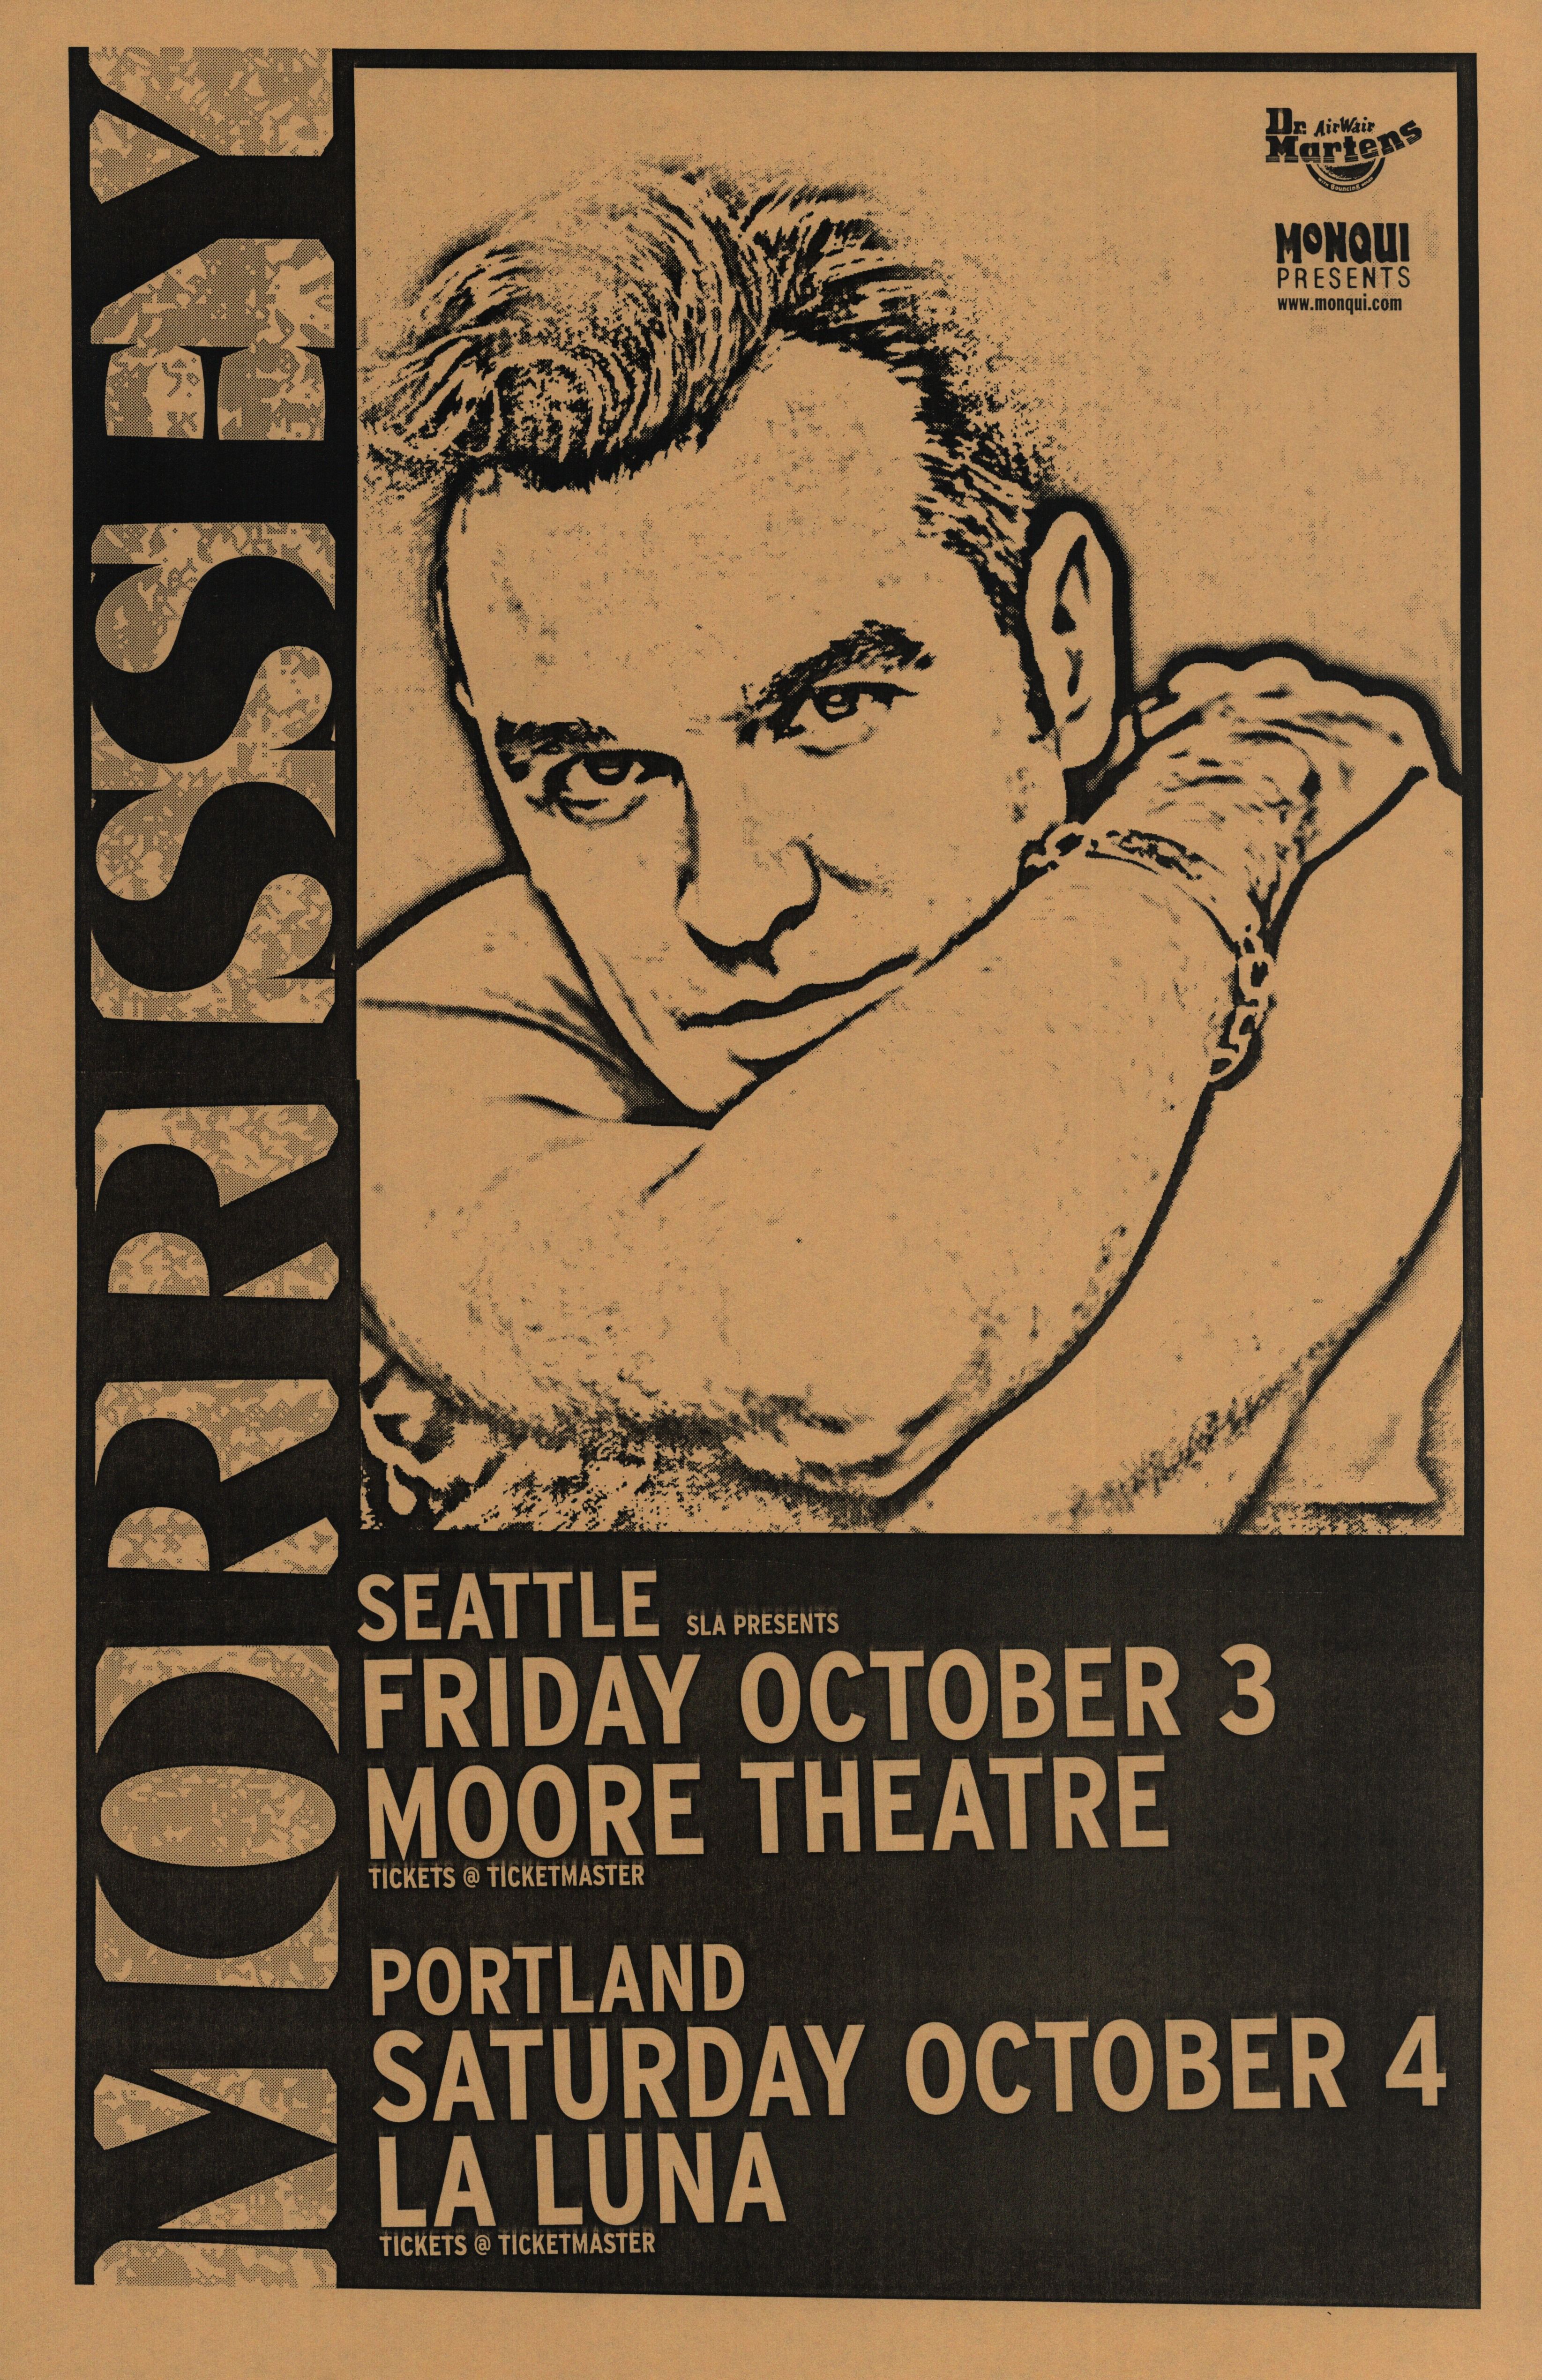 MXP-59.2 Morrissey Moore Theatre & La Luna 1997 Concert Poster